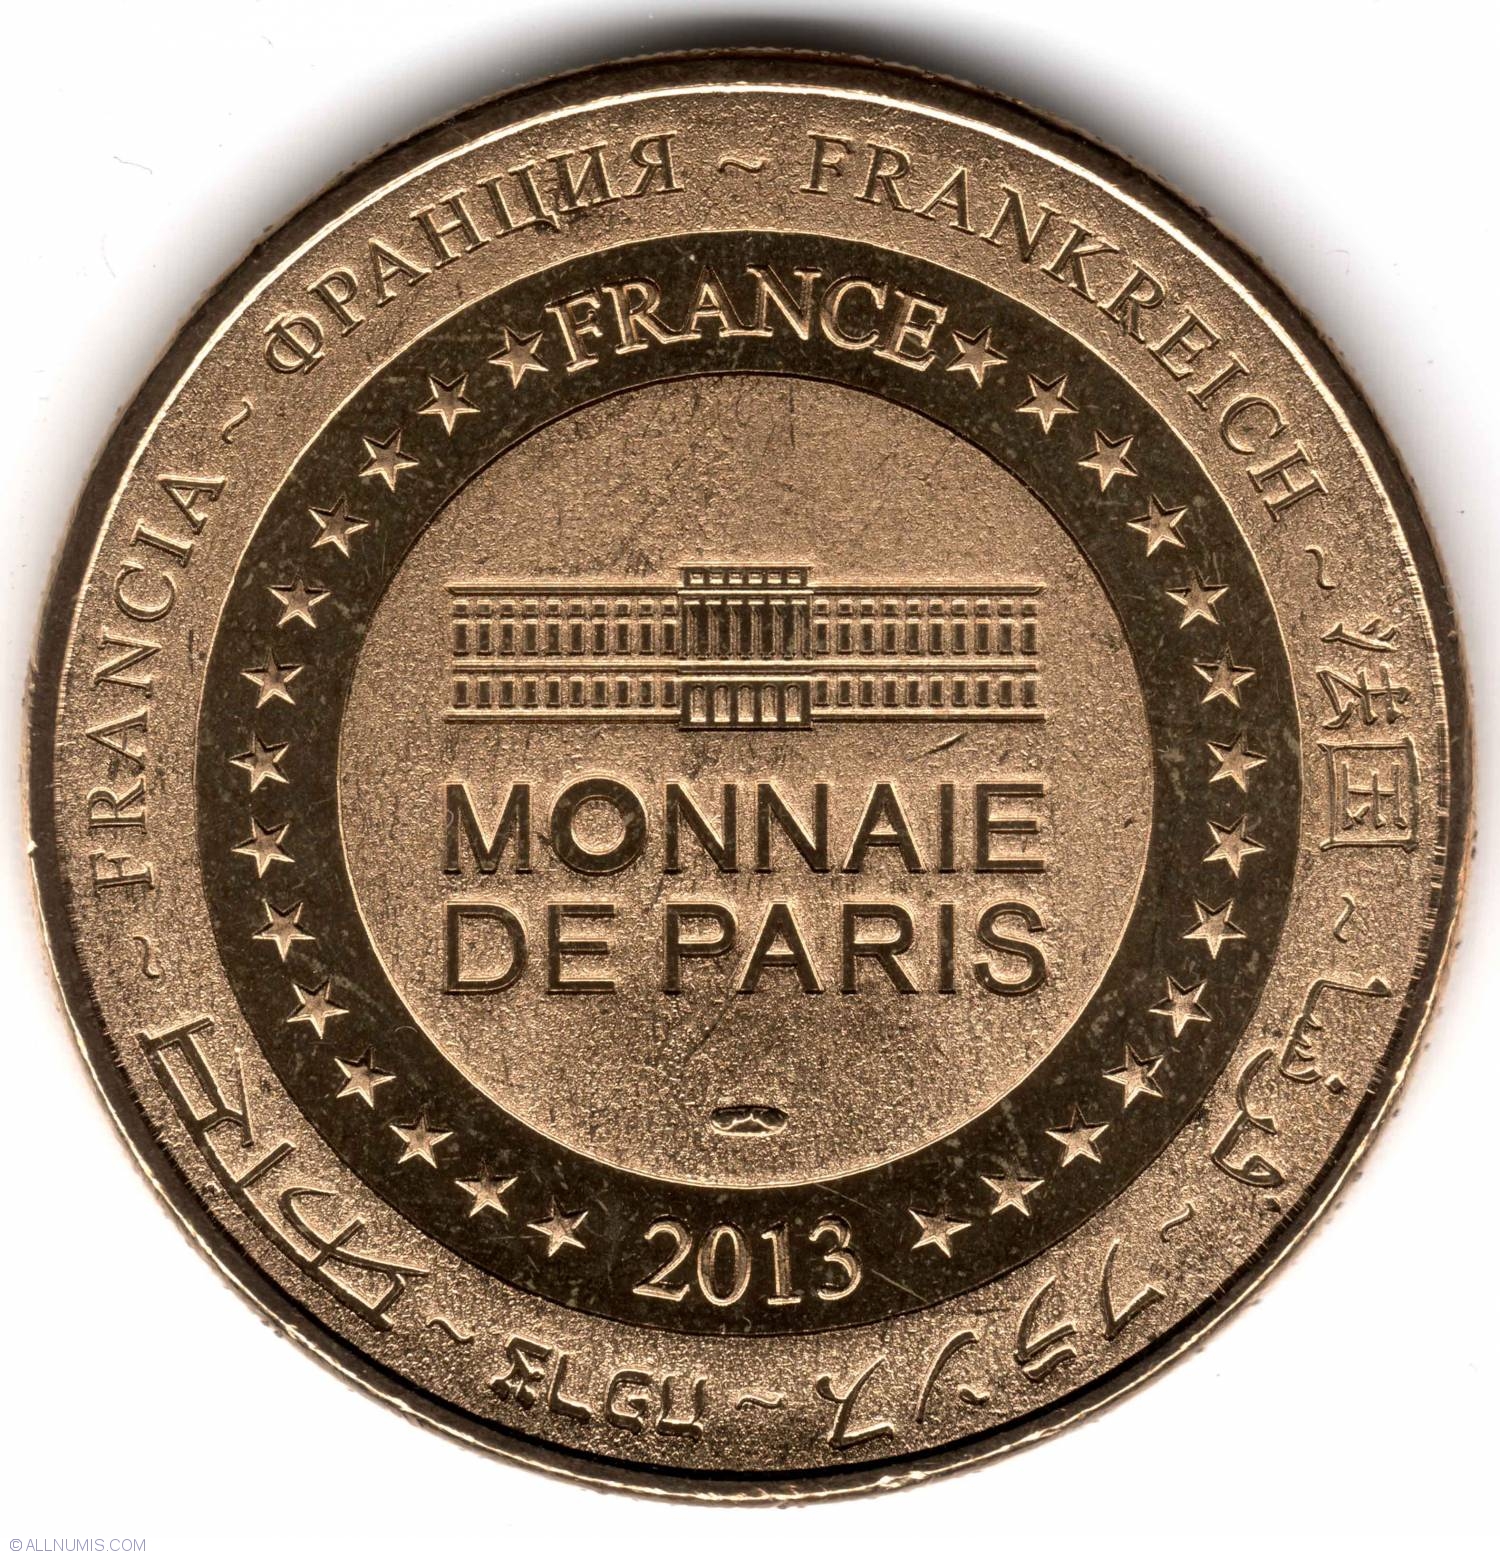 A day at the Monnaie de Paris